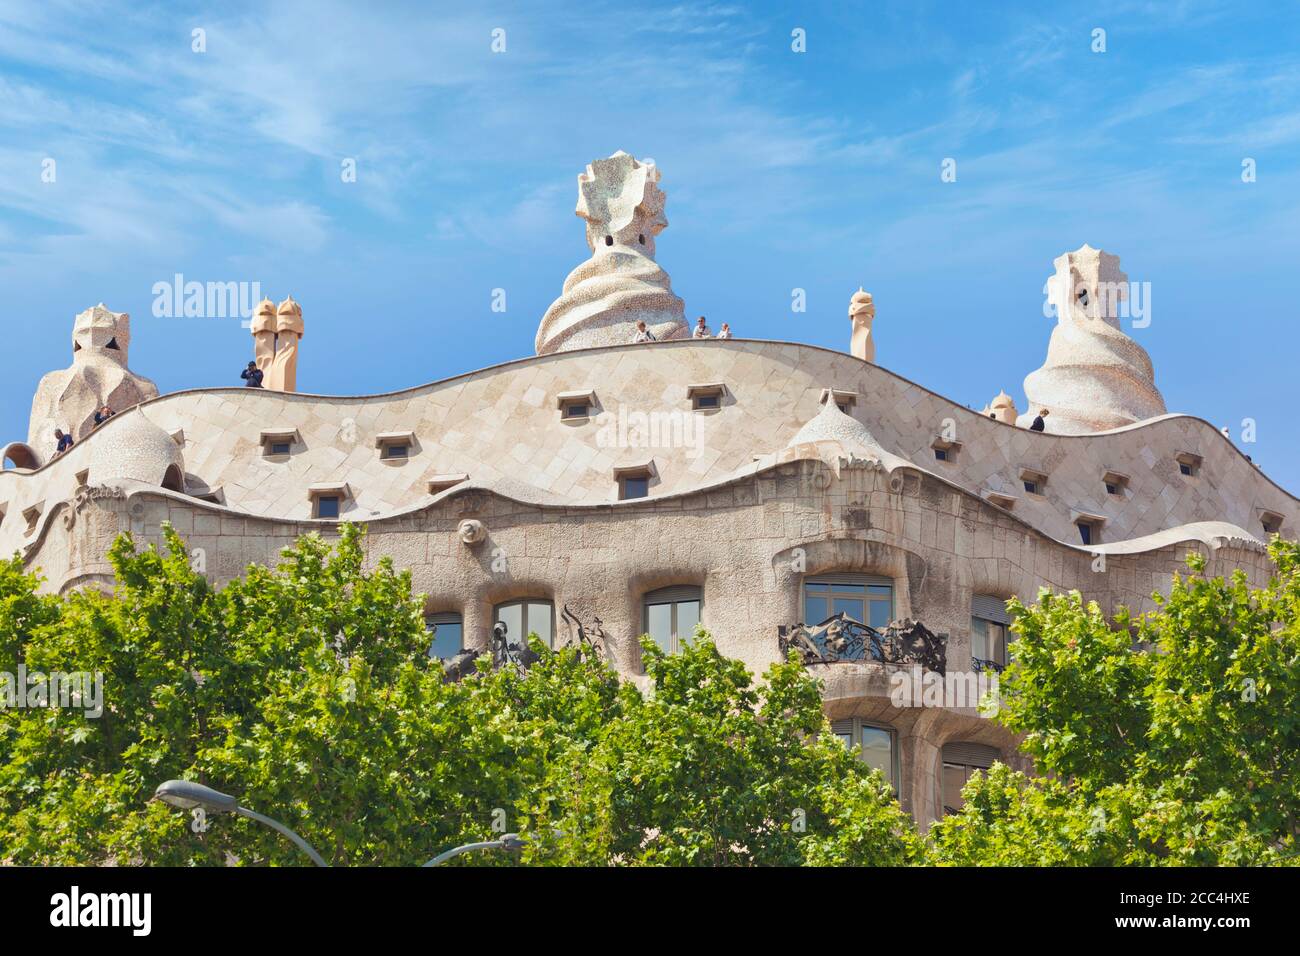 Barcelona, España. Casa Mila, o la Pedrera. Edificio modernista diseñado por Antoni Gaudí. Es un lugar declarado Patrimonio de la Humanidad por la UNESCO. Foto de stock